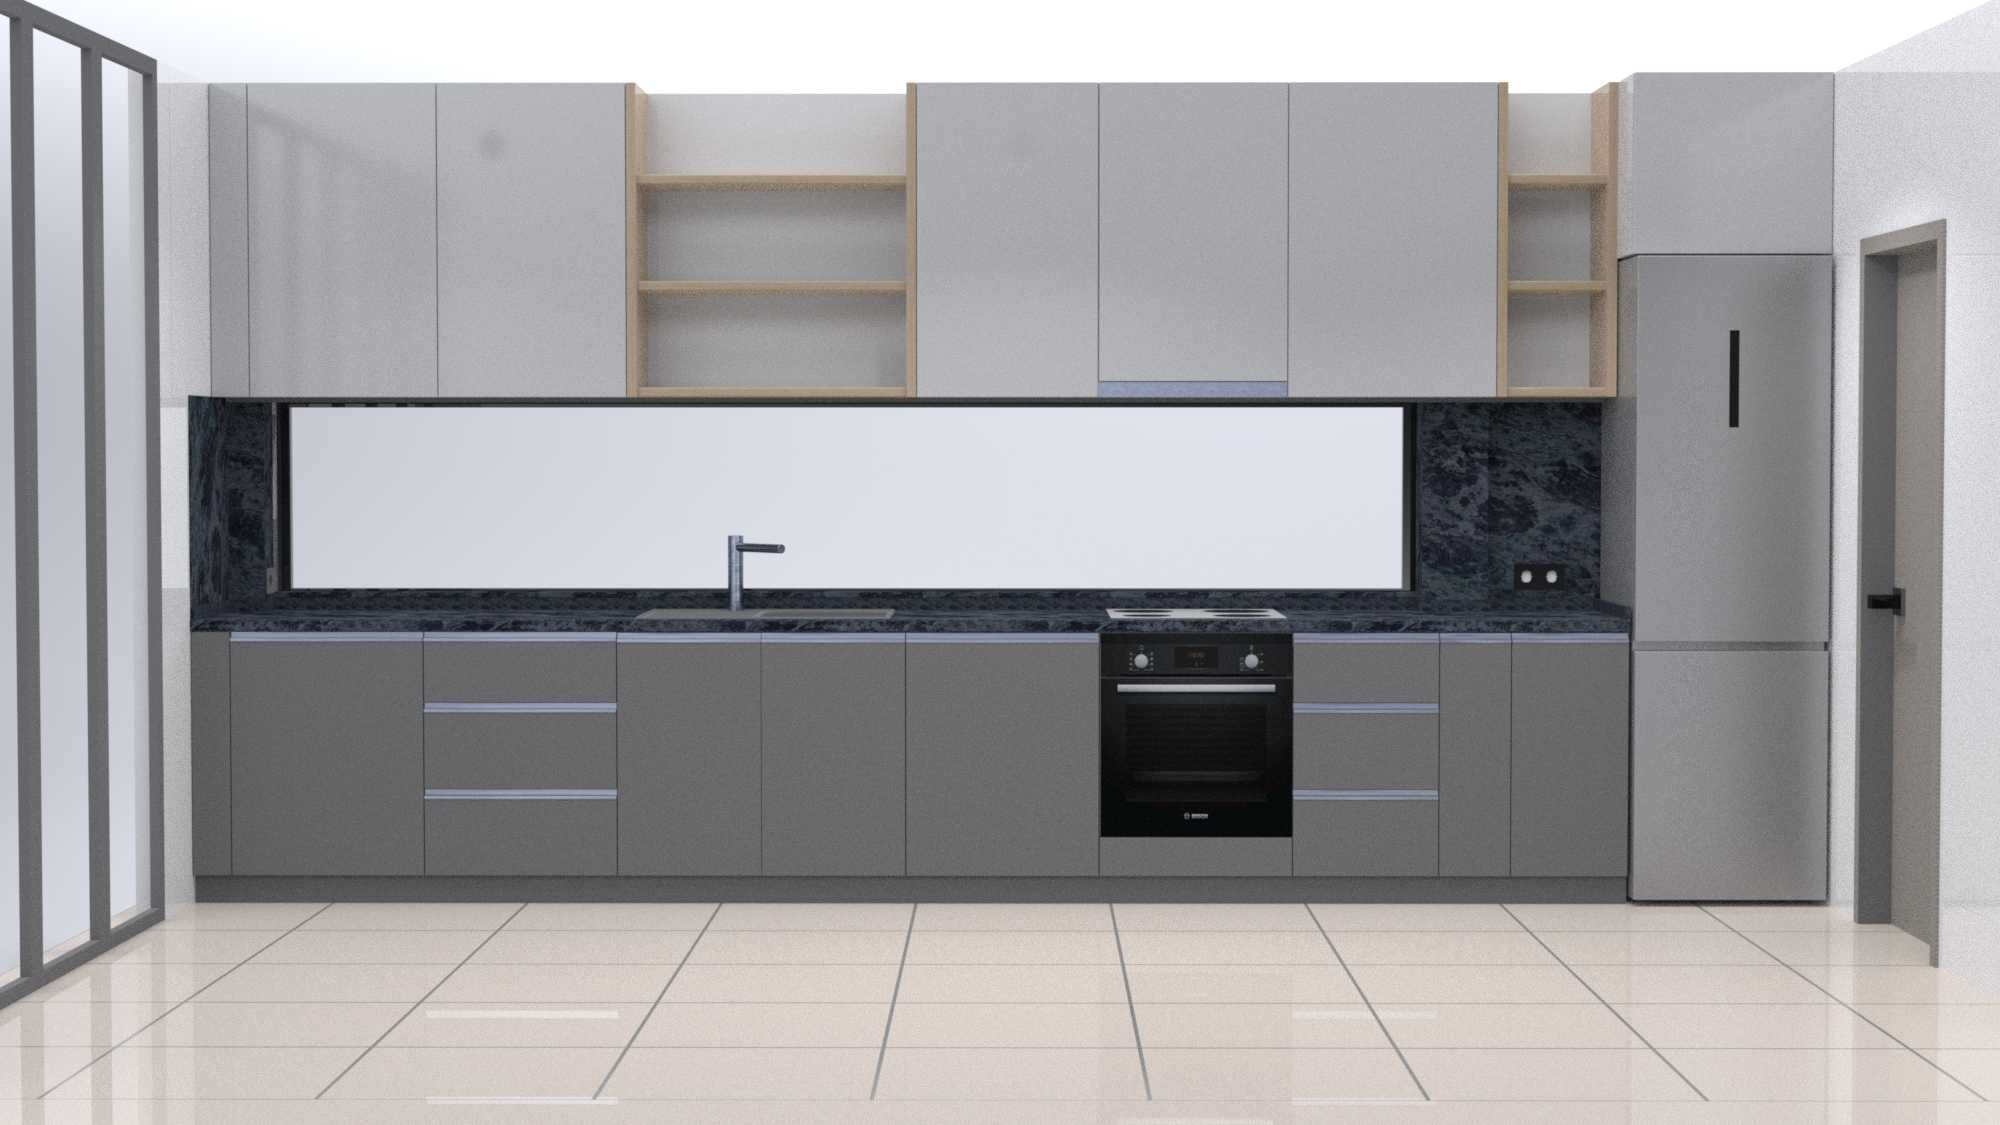 Проектиране и визуализация на кухни-3D Kitchen View